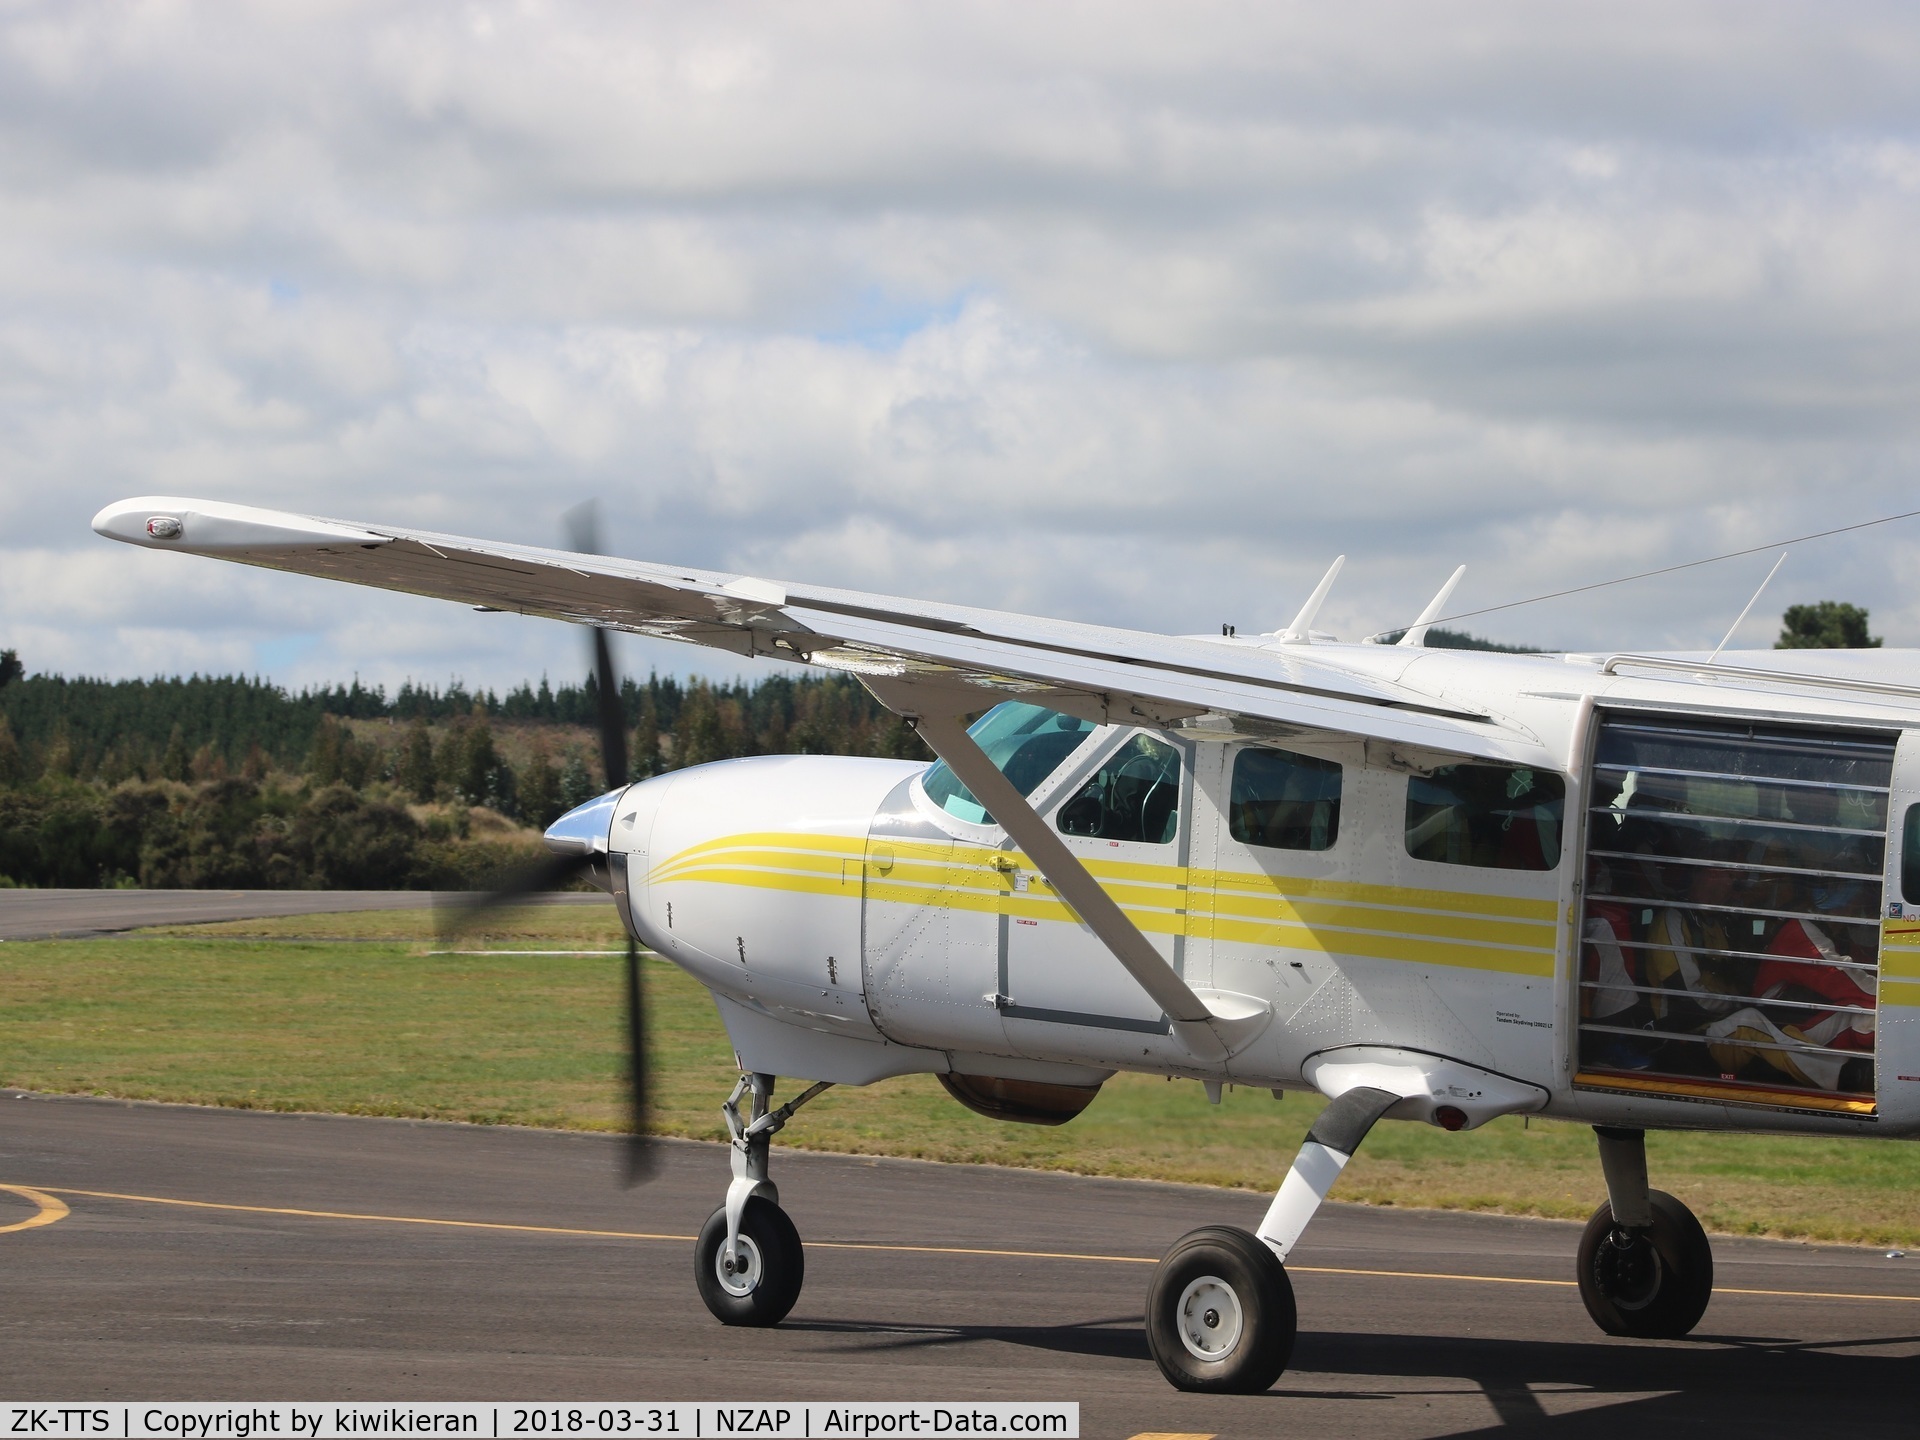 ZK-TTS, 2004 Cessna 208 Caravan I C/N 20800373, At NZAP